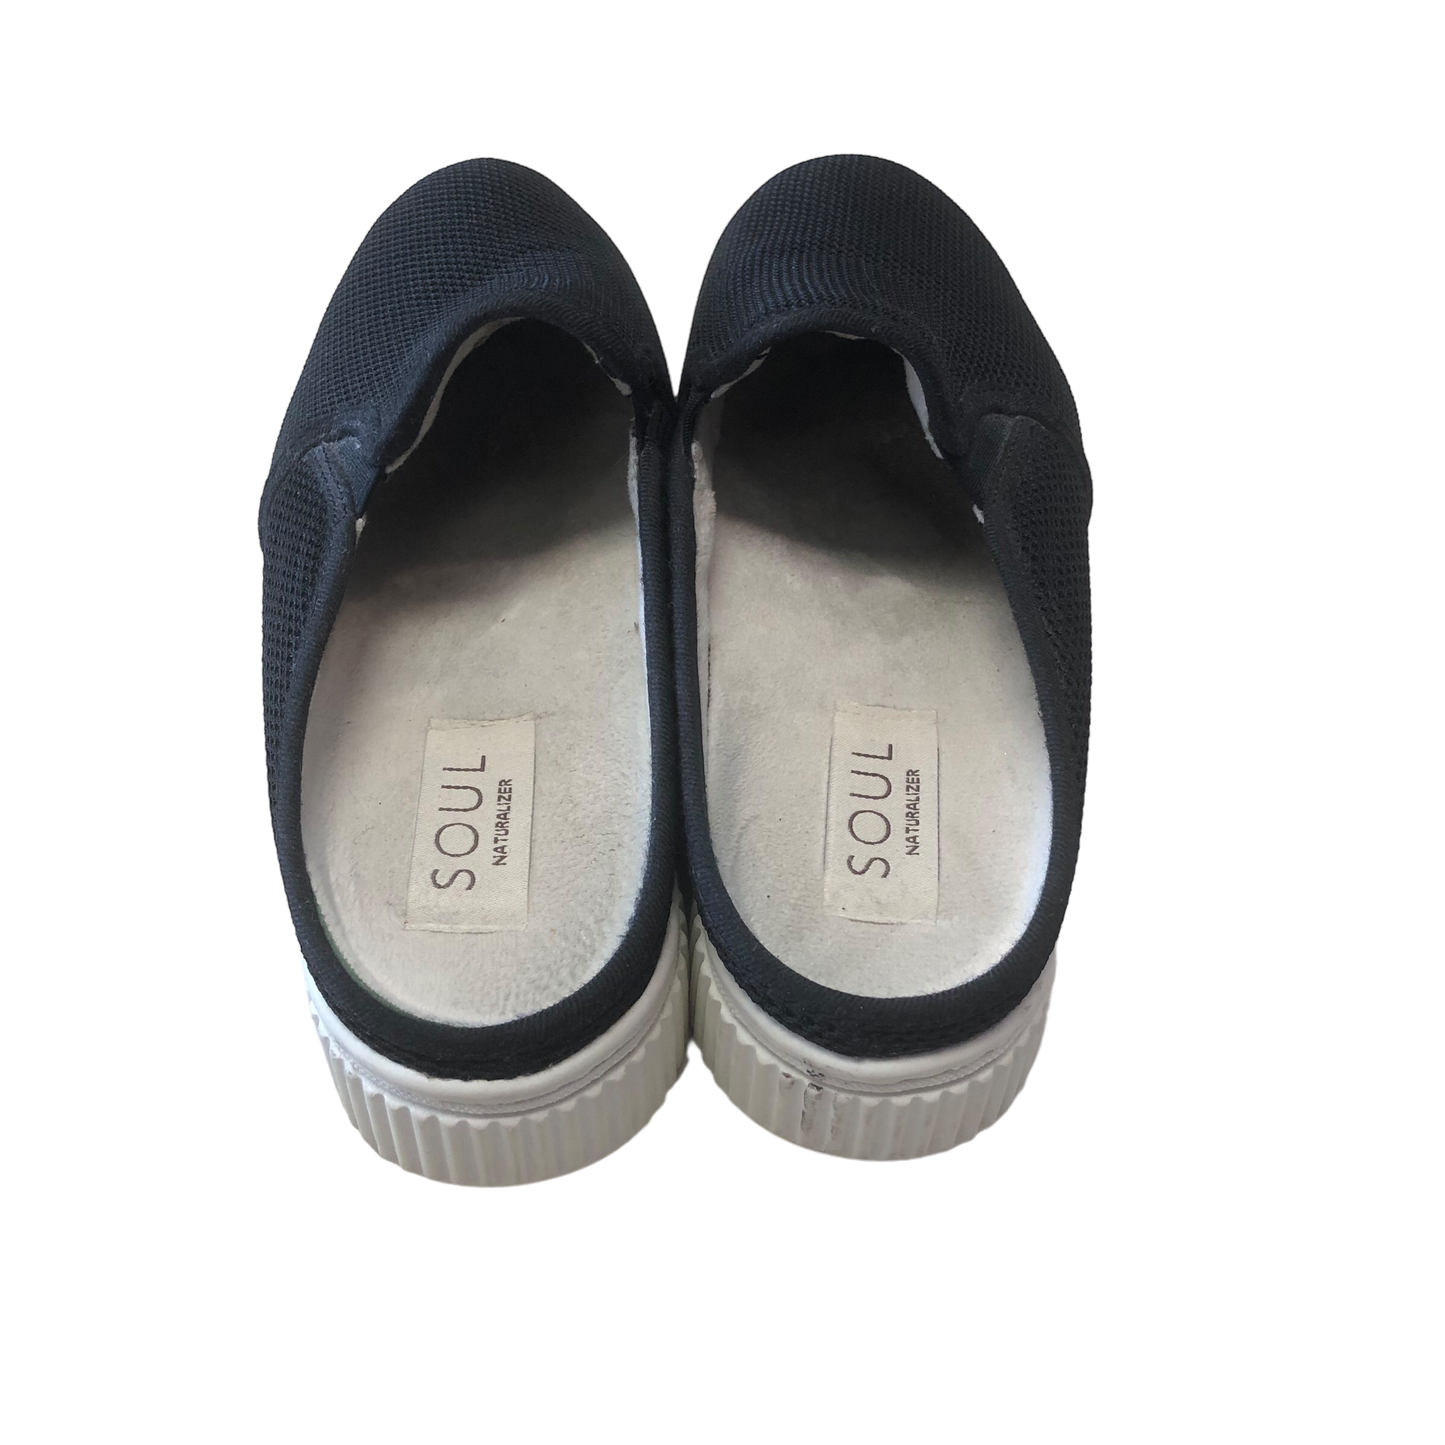 Black Shoes Flats Cmc, Size 7